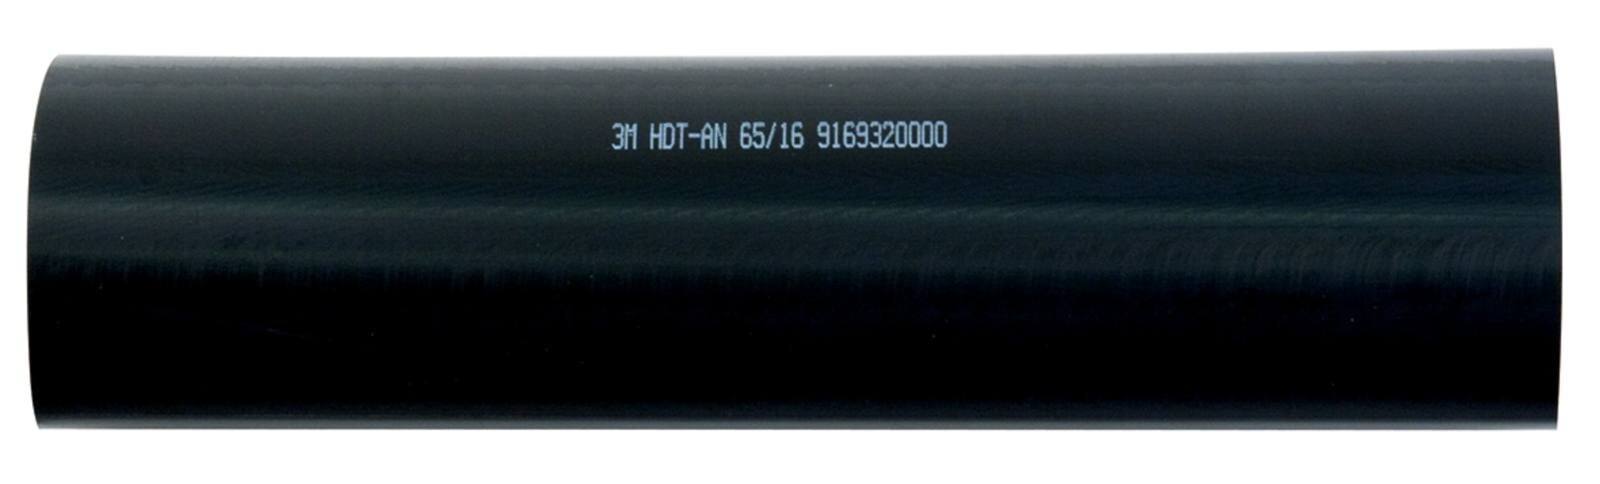 3M HDT-AN Gaine thermorétractable à paroi épaisse avec adhésif, noir, 65/16 mm, 1 m